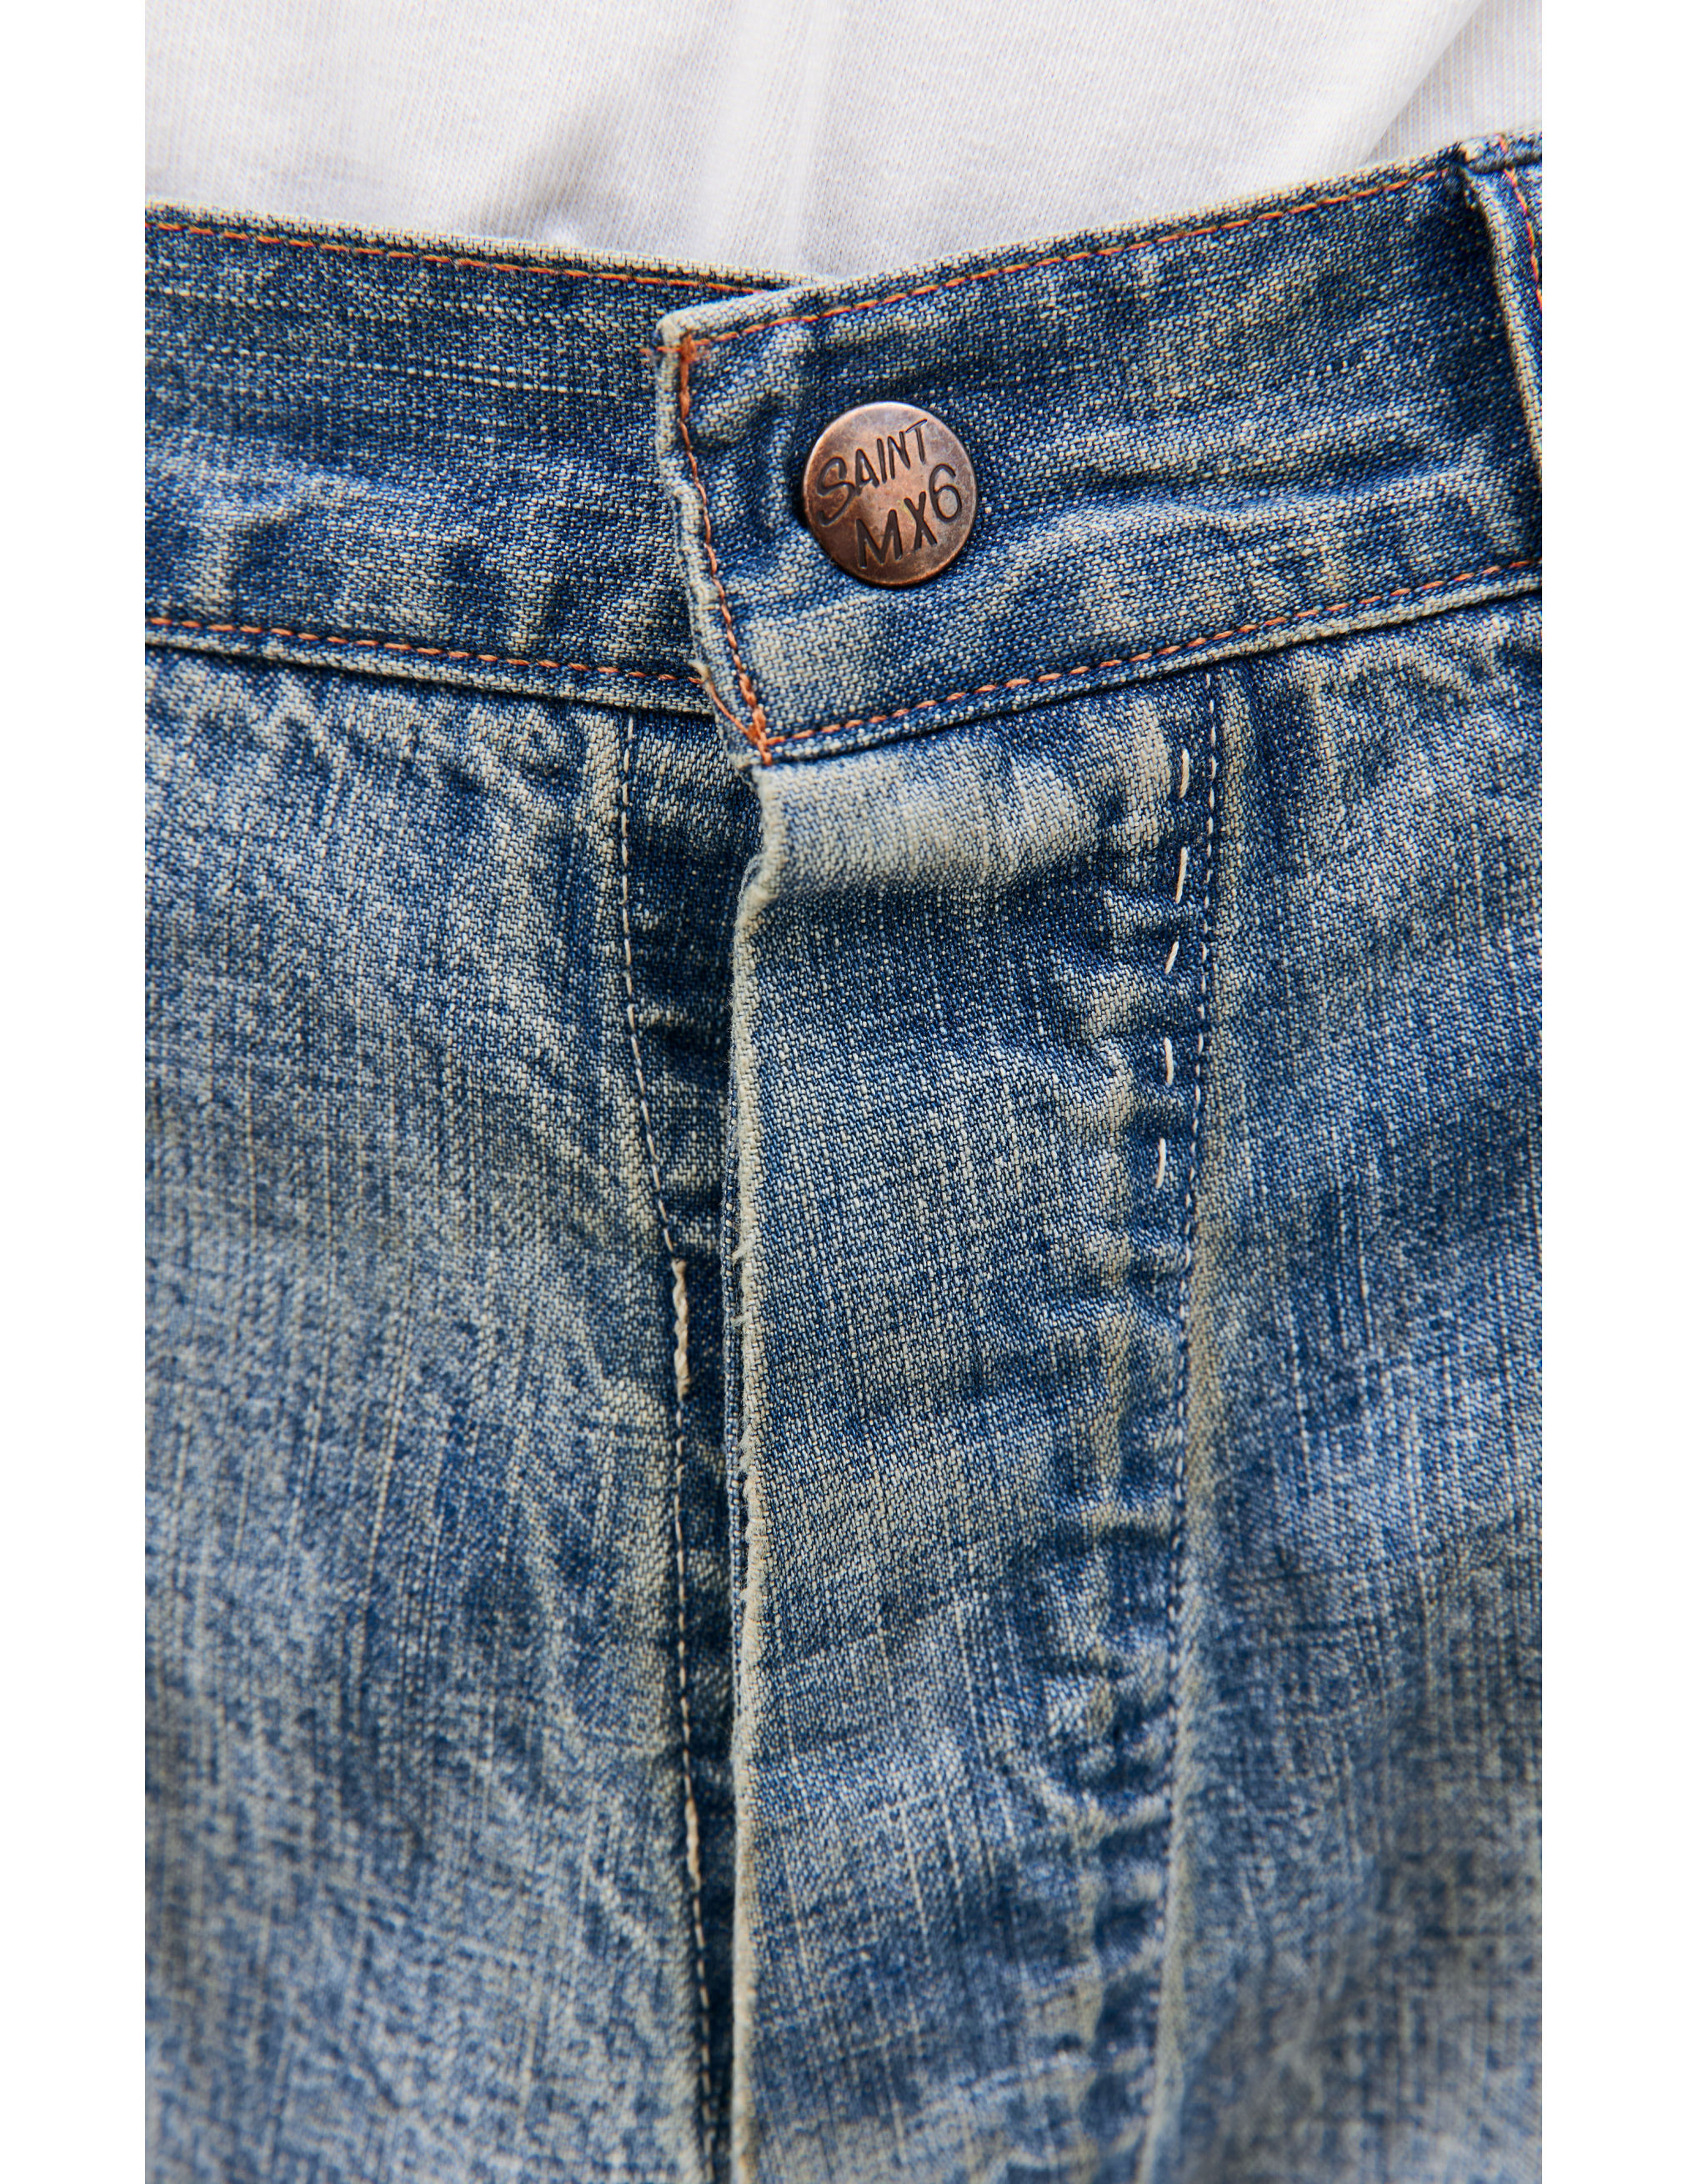 Прямые джинсы с патчами Saint Michael SM-A23-0000-038, размер M - фото 4